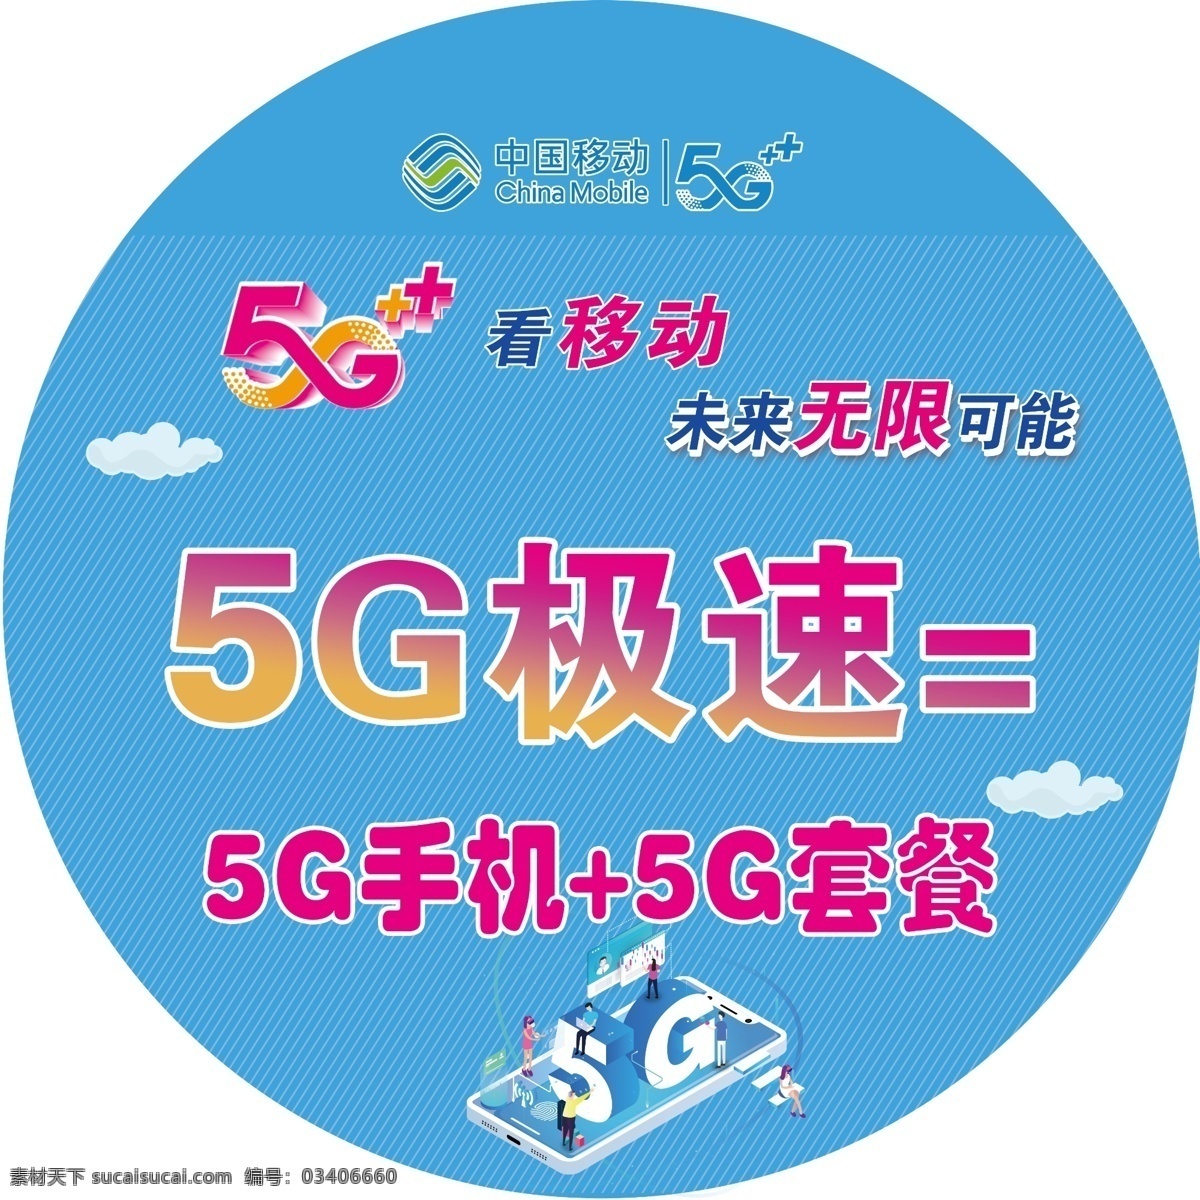 5g看移动 未来无限可能 5g选移动 5g套餐 5g极速 5g手机 蓝色 线条 分层